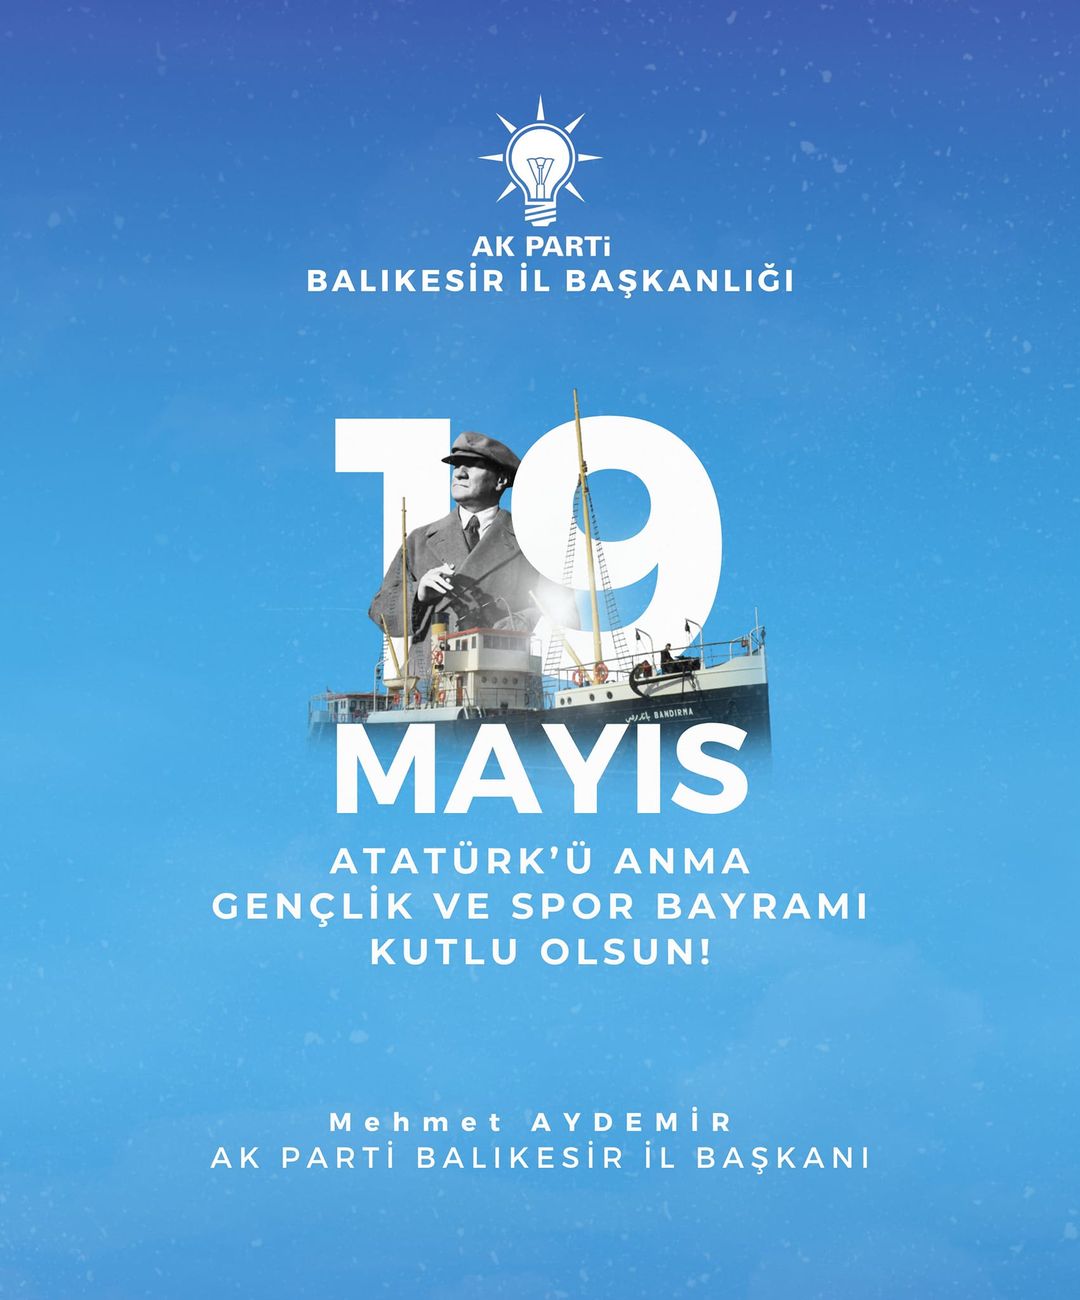 AK Parti Balıkesir İl Başkanlığı'ndan 19 Mayıs Açıklaması